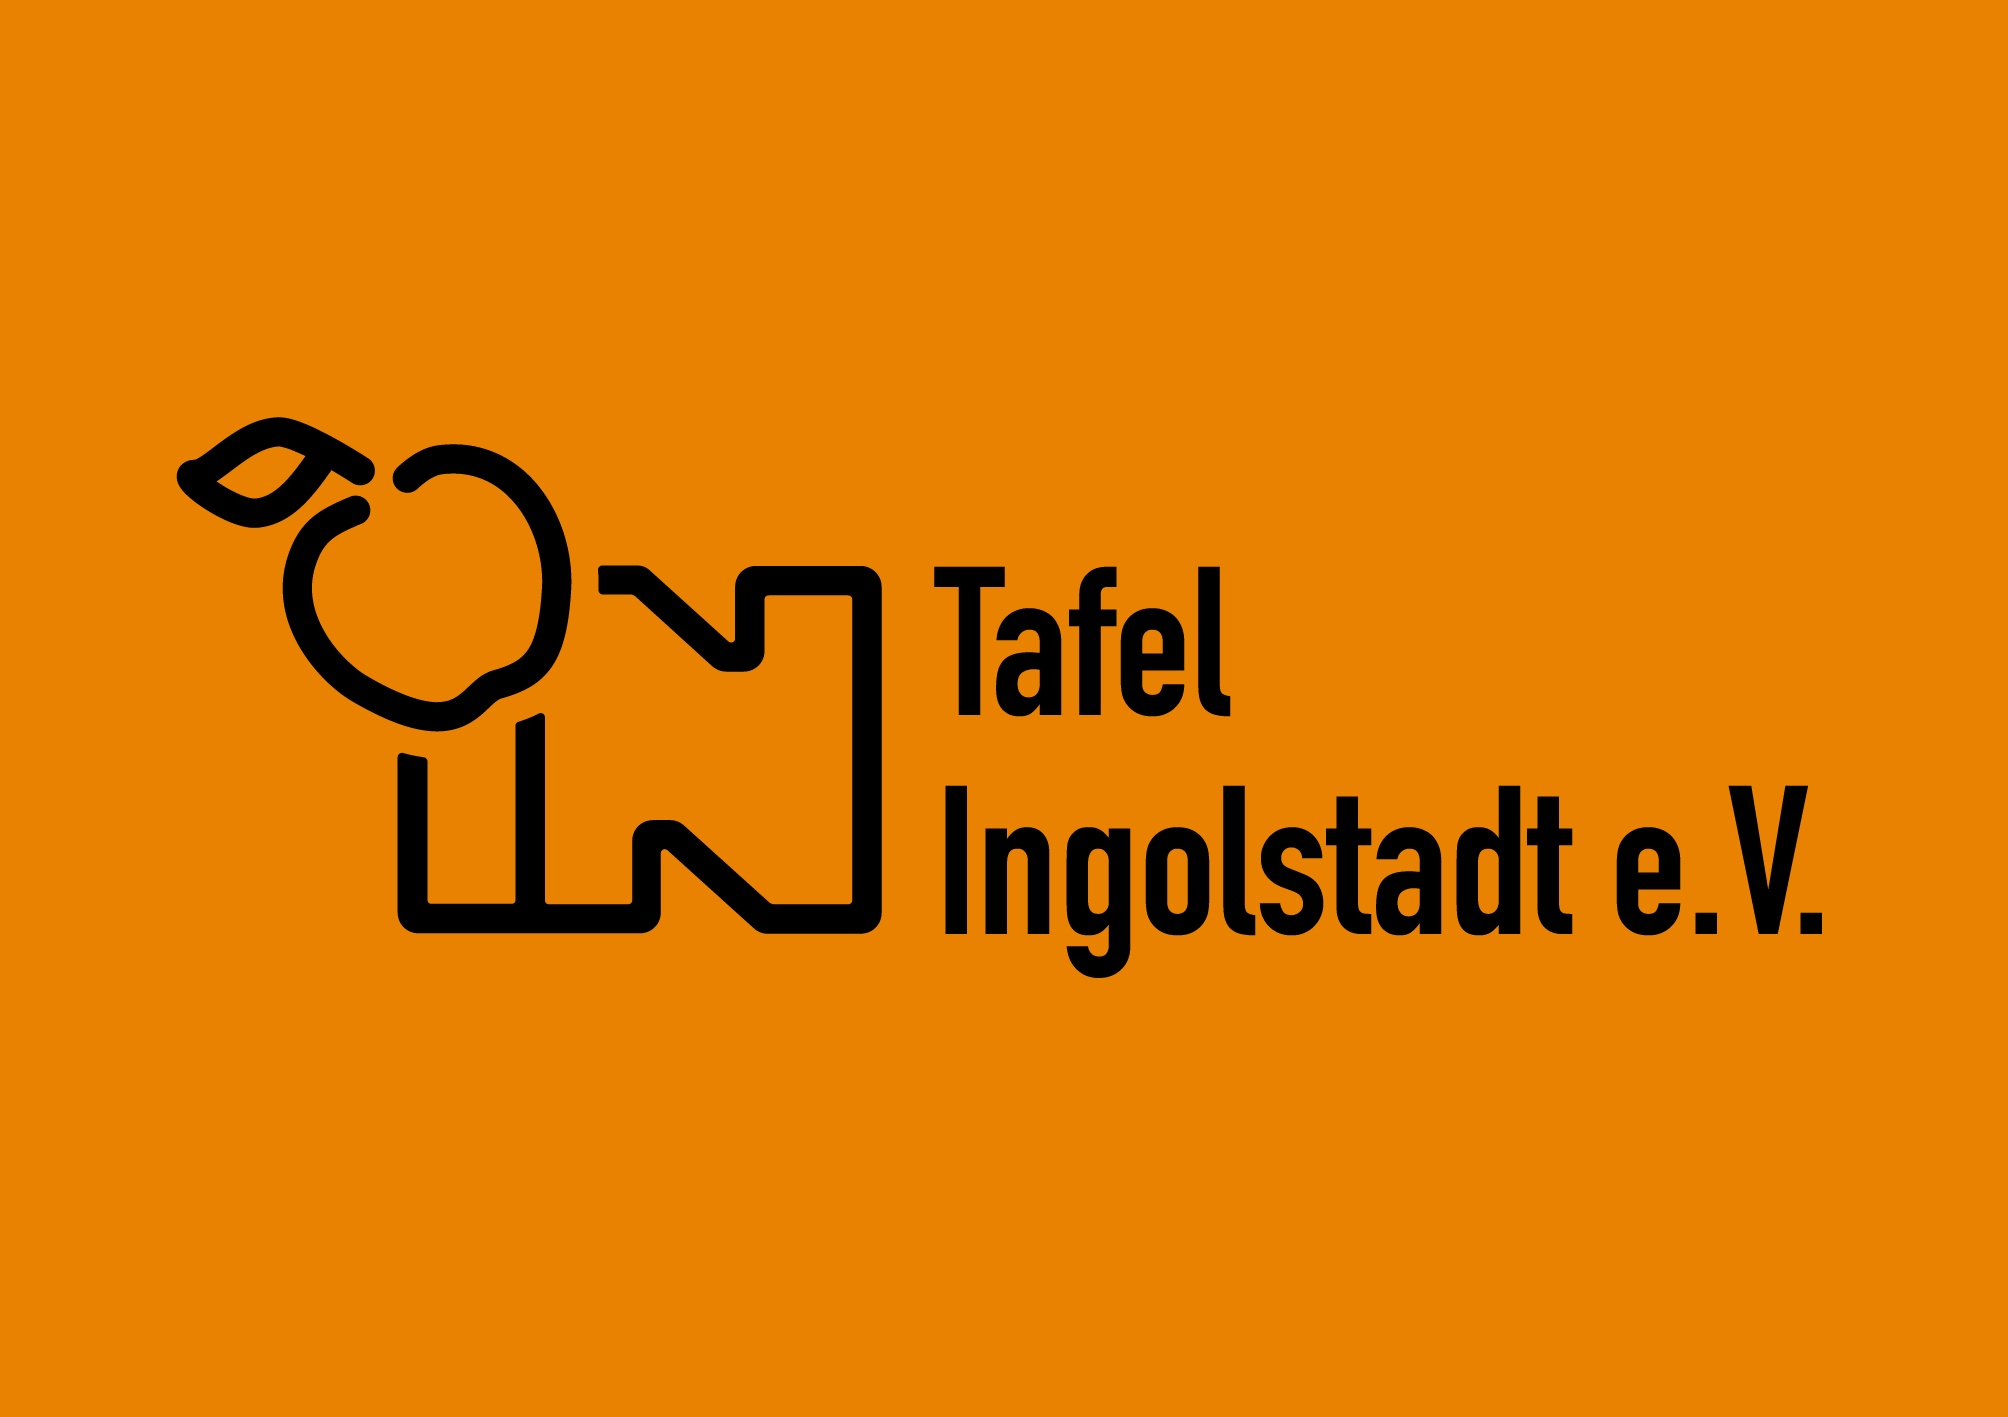 Tafel Ingolstadt